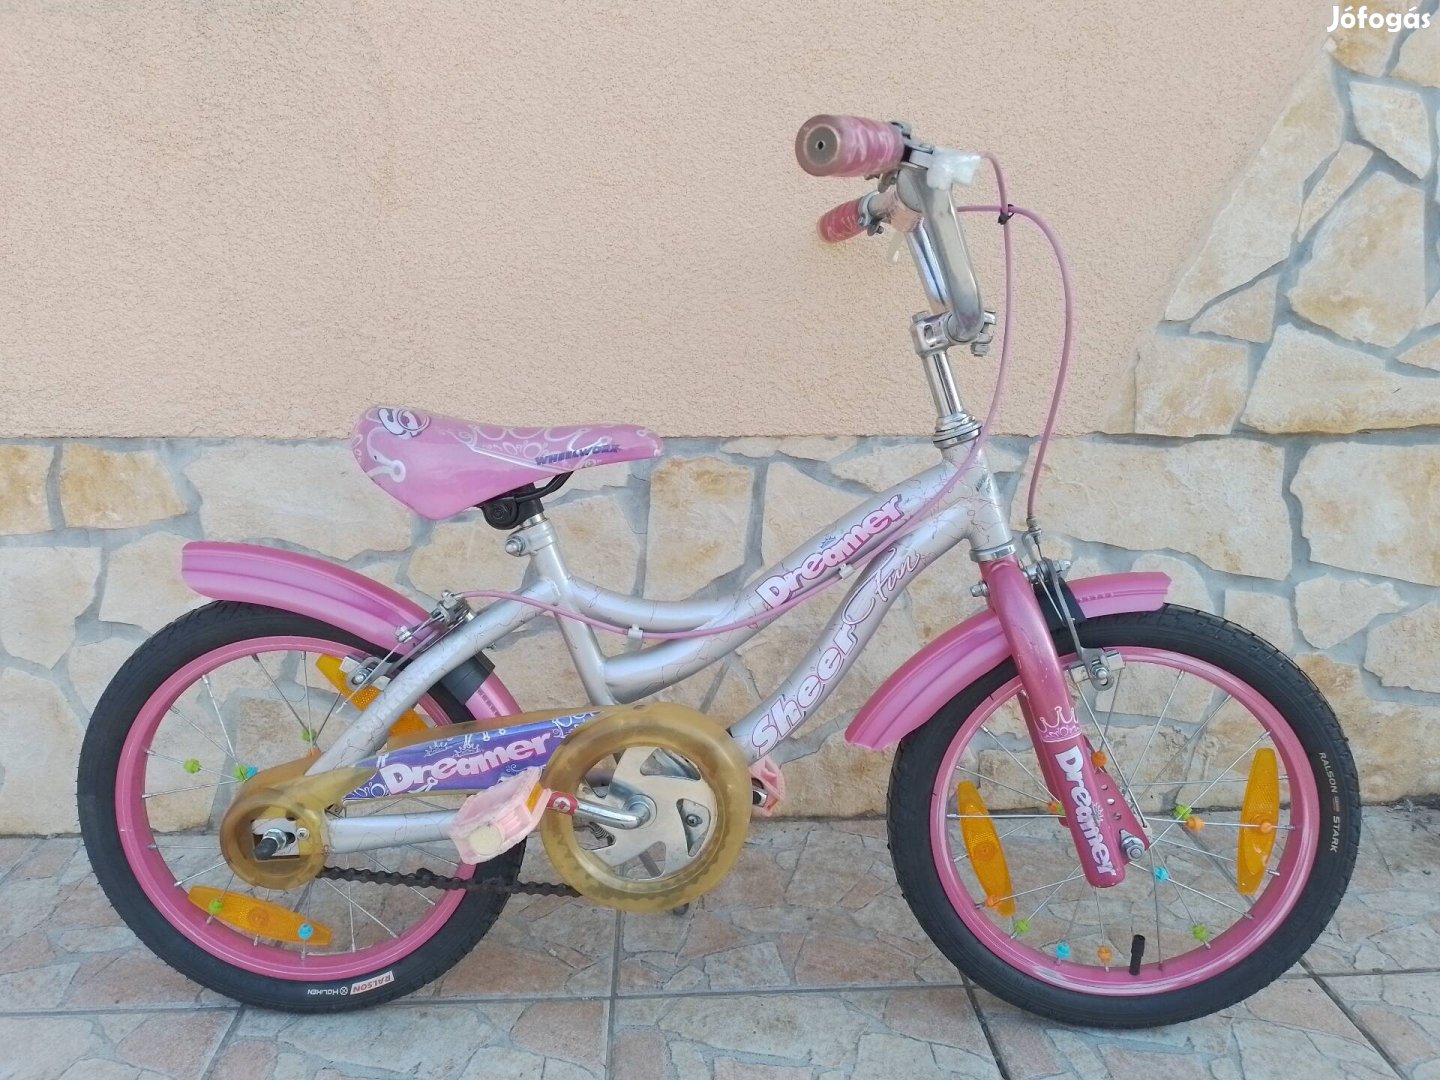 16-os Dreamer kislány kerékpár bicikli. 